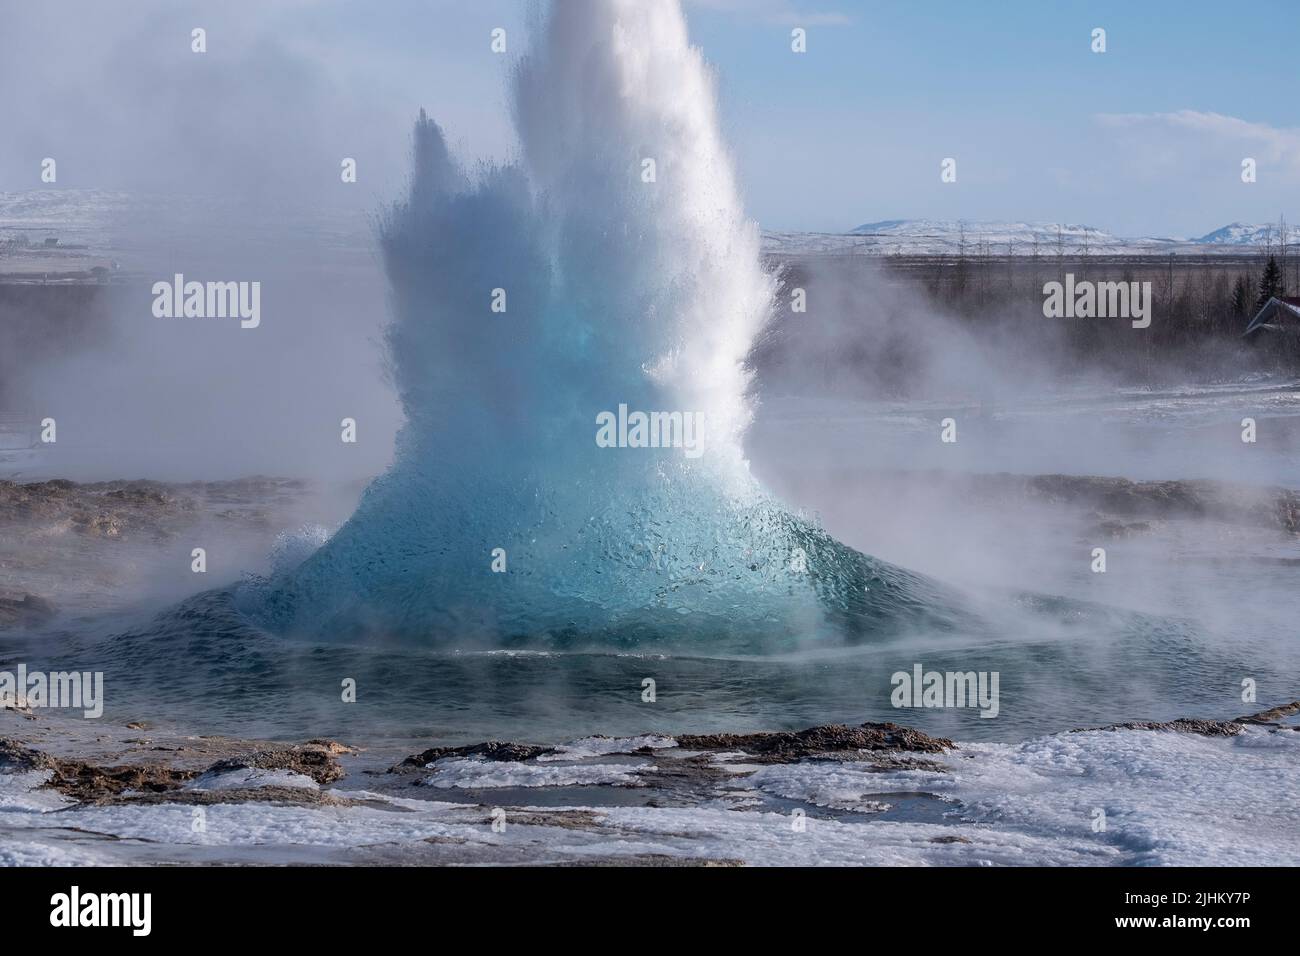 Le geyser de Strokkur en Islande éclate, tiré pendant l'hiver sans personne autour Banque D'Images